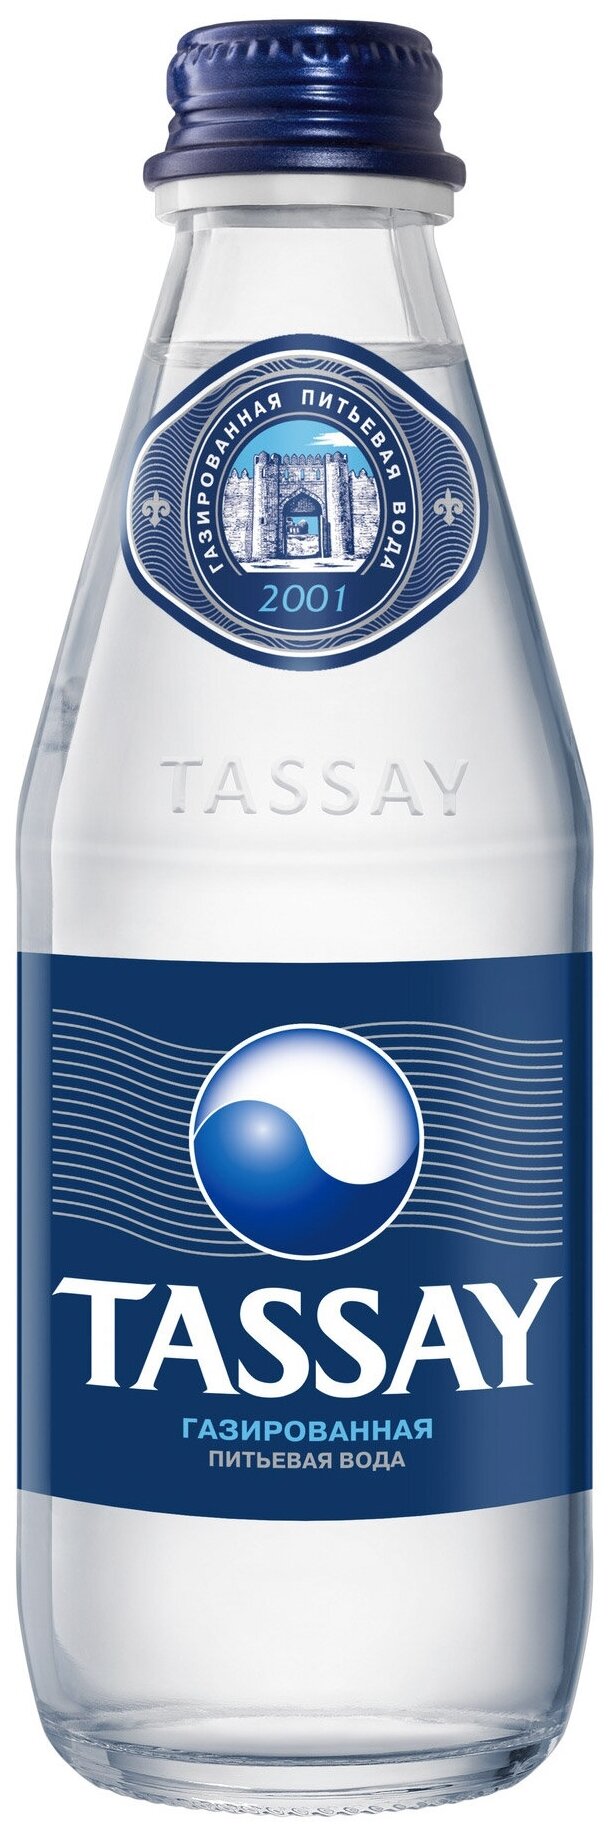 Вода природная газированная Tassay 0,5л Стекло